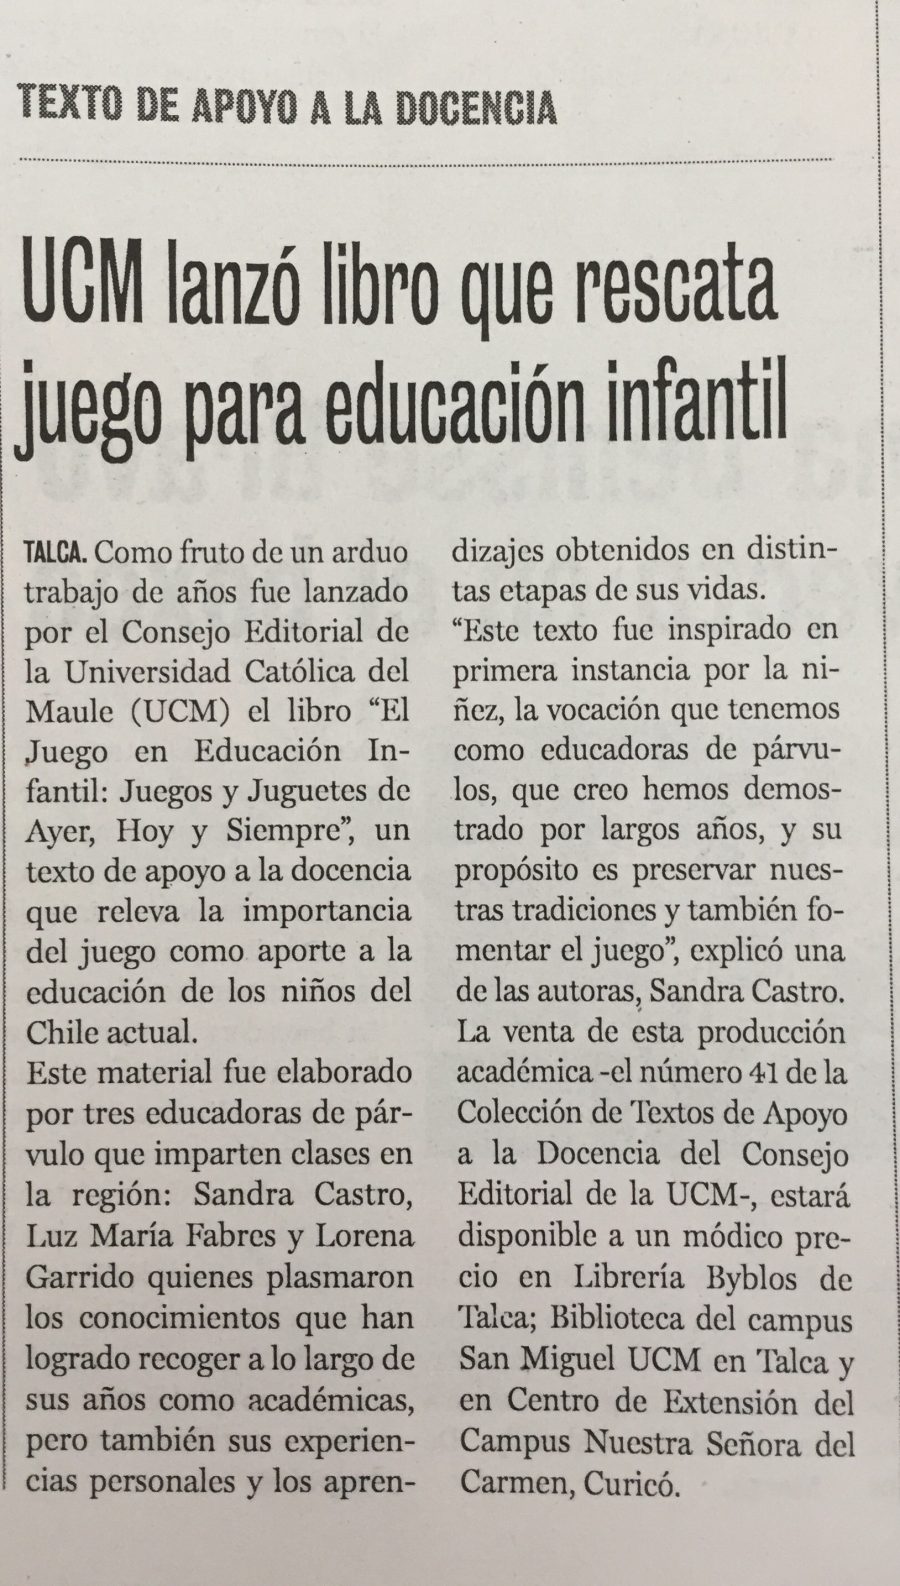 12 de octubre en Diario La Prensa: “UCM lanzó libro que rescata juego para educación infantil”